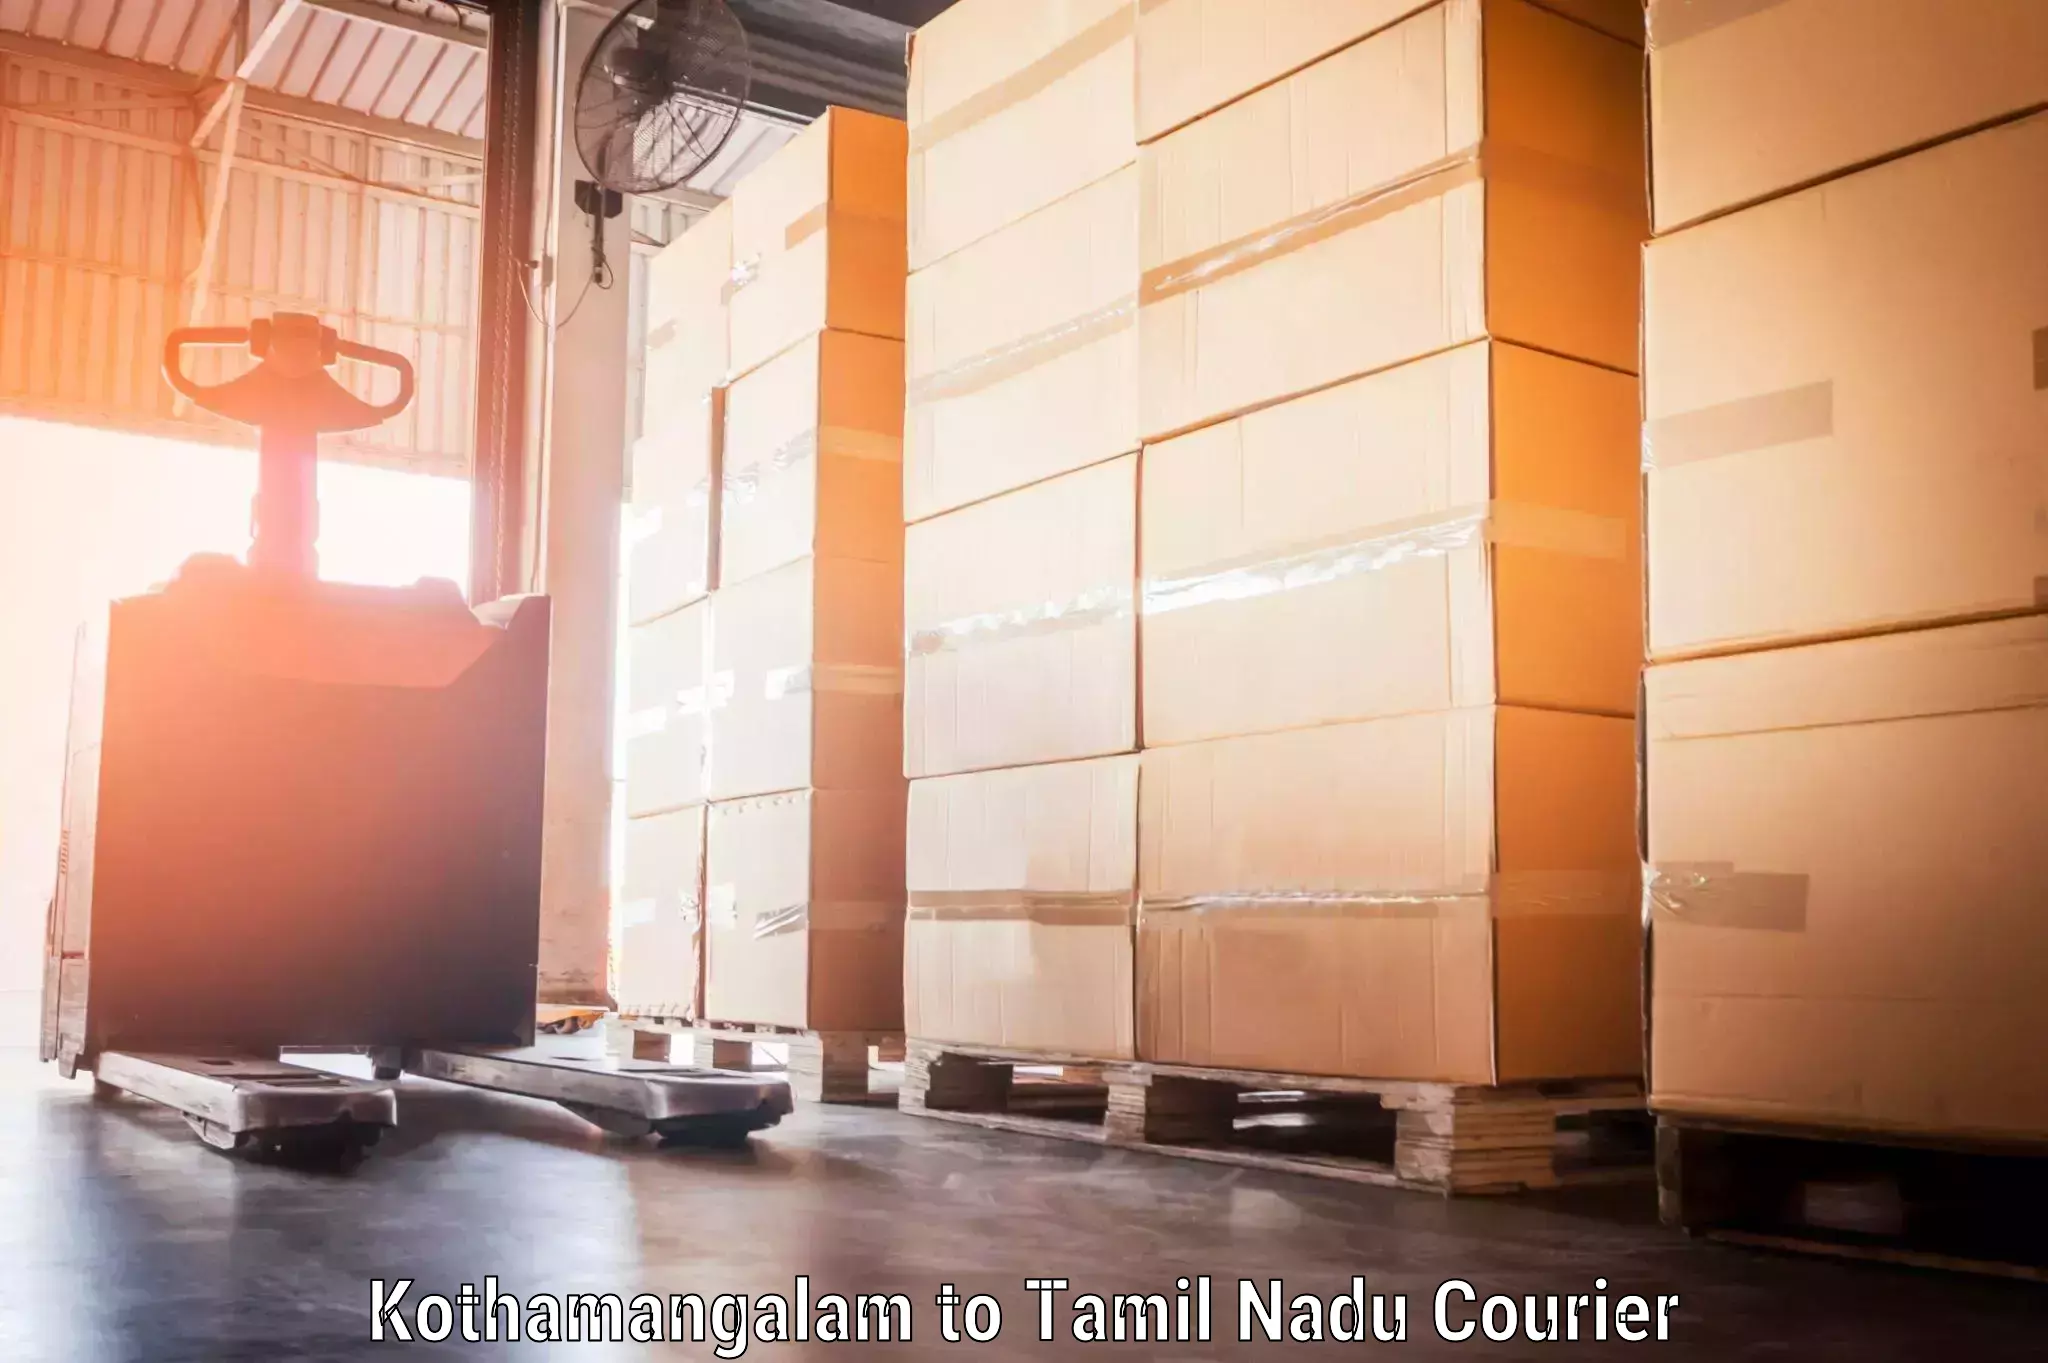 Luggage shipment specialists Kothamangalam to Tamil Nadu